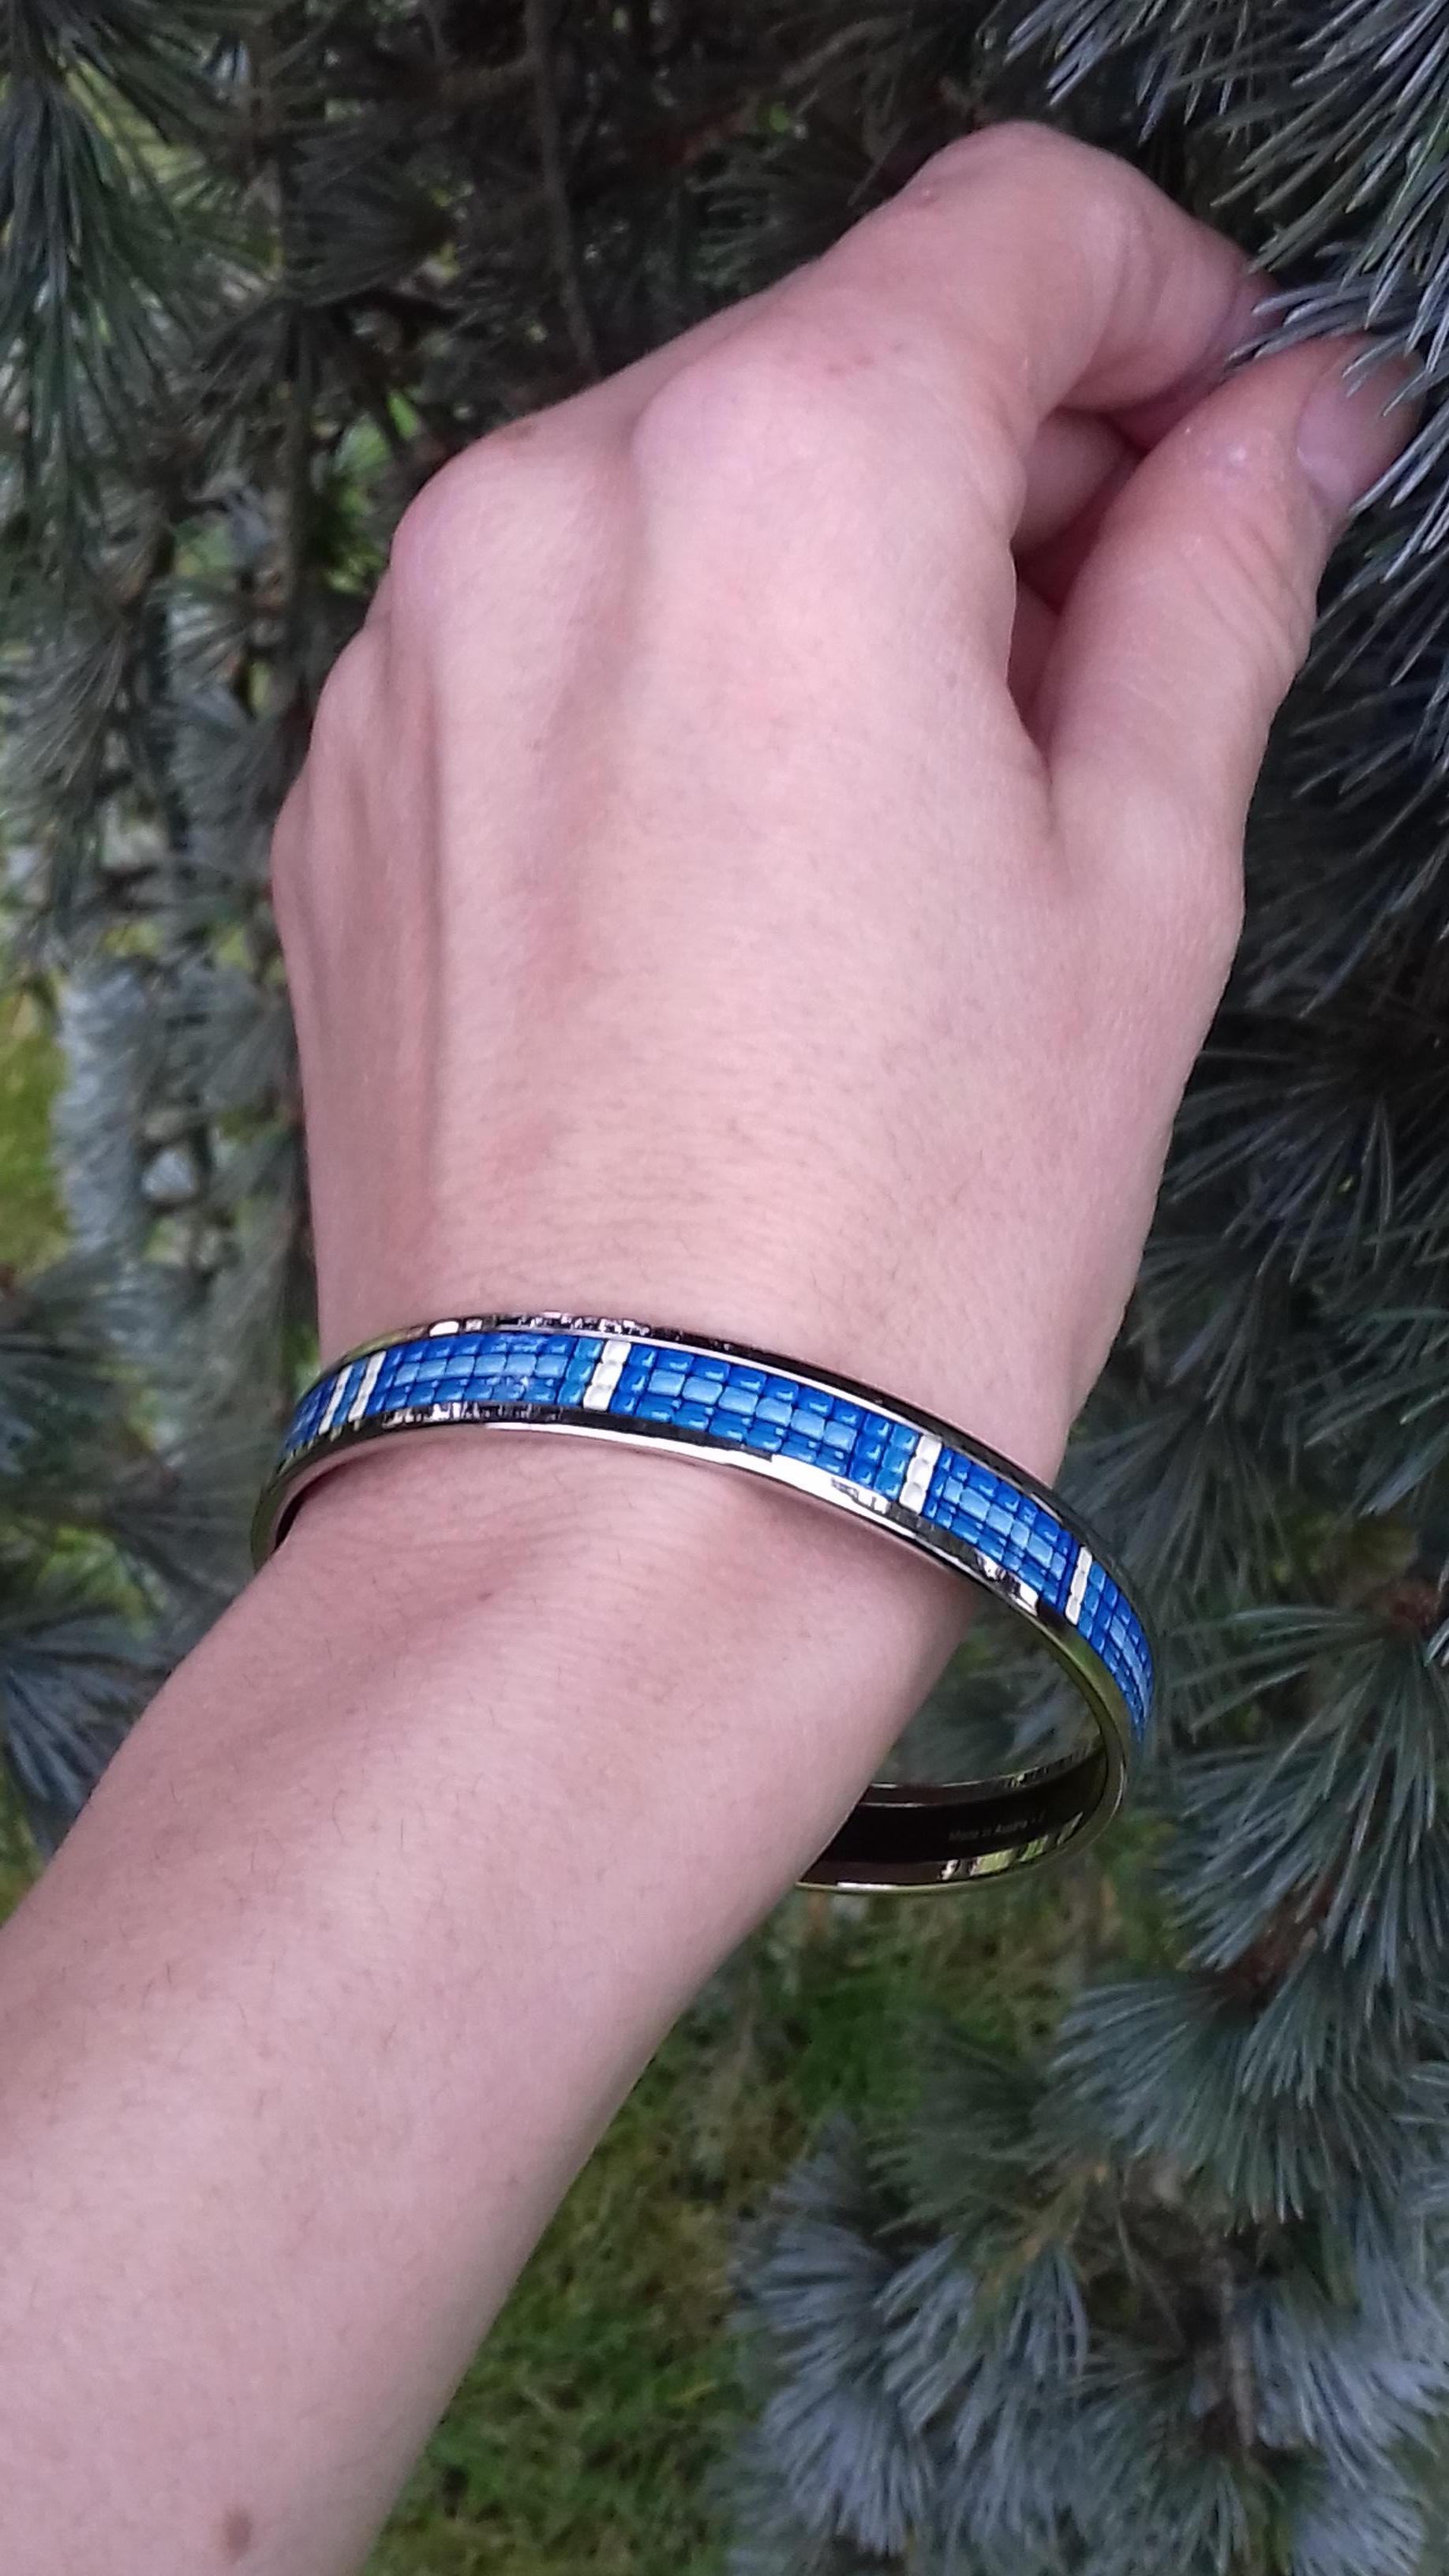 Magnifique bracelet Hermès authentique

Motif : Perles imprimées

Fabriqué en Autriche + E

Fait d'émail imprimé et de matériel Palladium NOUVEAU

Colorways : Bleu, blanc, jantes en argent

